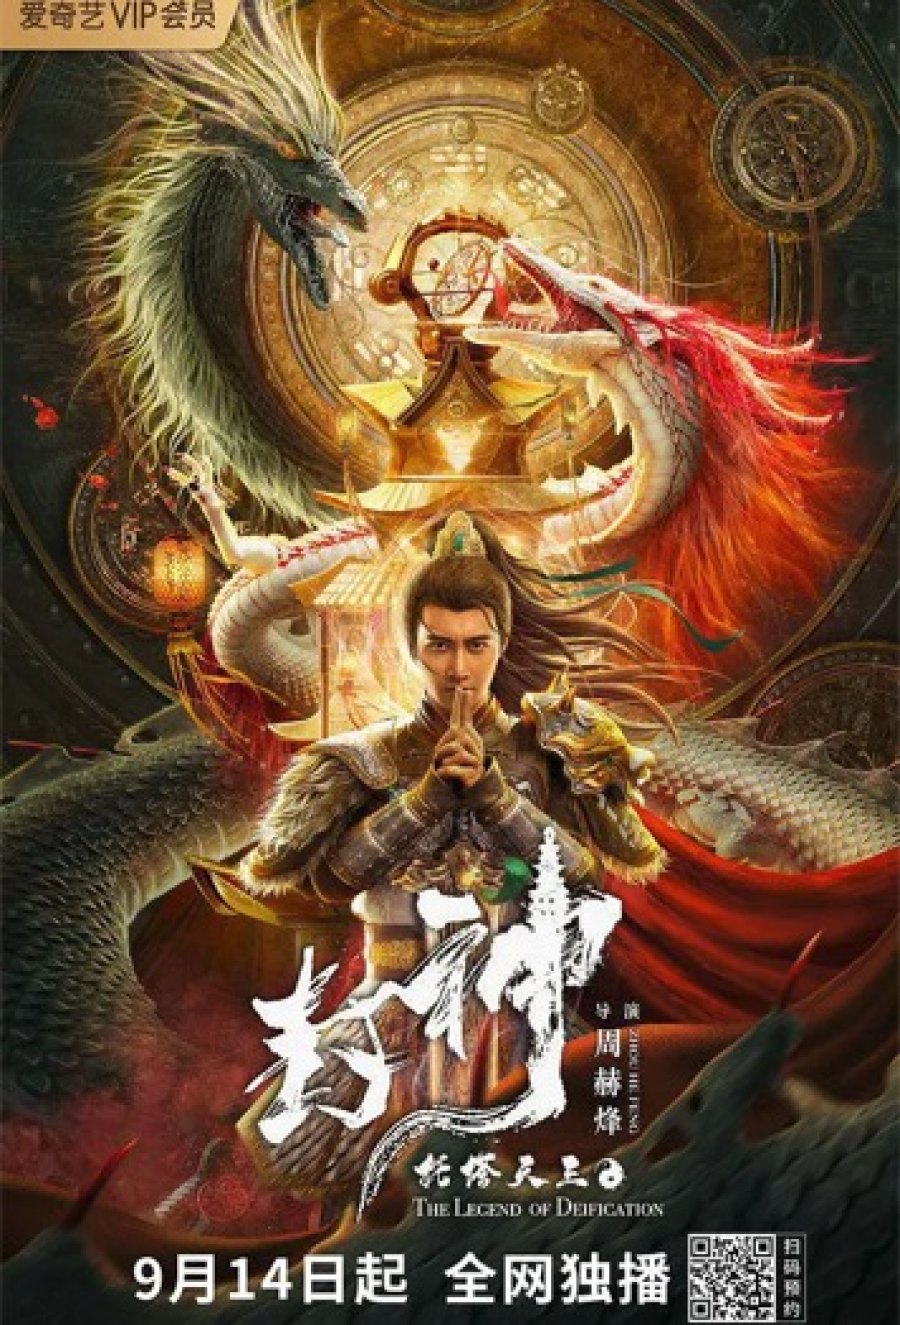 ดูหนังออนไลน์ฟรี THE LEGEND OF DEIFICATION-King Li Jing (2021) ตำนานราชาแห่งสวรรค์-กำเหนิดหลี่จิ้งทูตเจดีย์สวรรค์ หนังเต็มเรื่อง หนังมาสเตอร์ ดูหนังHD ดูหนังออนไลน์ ดูหนังใหม่